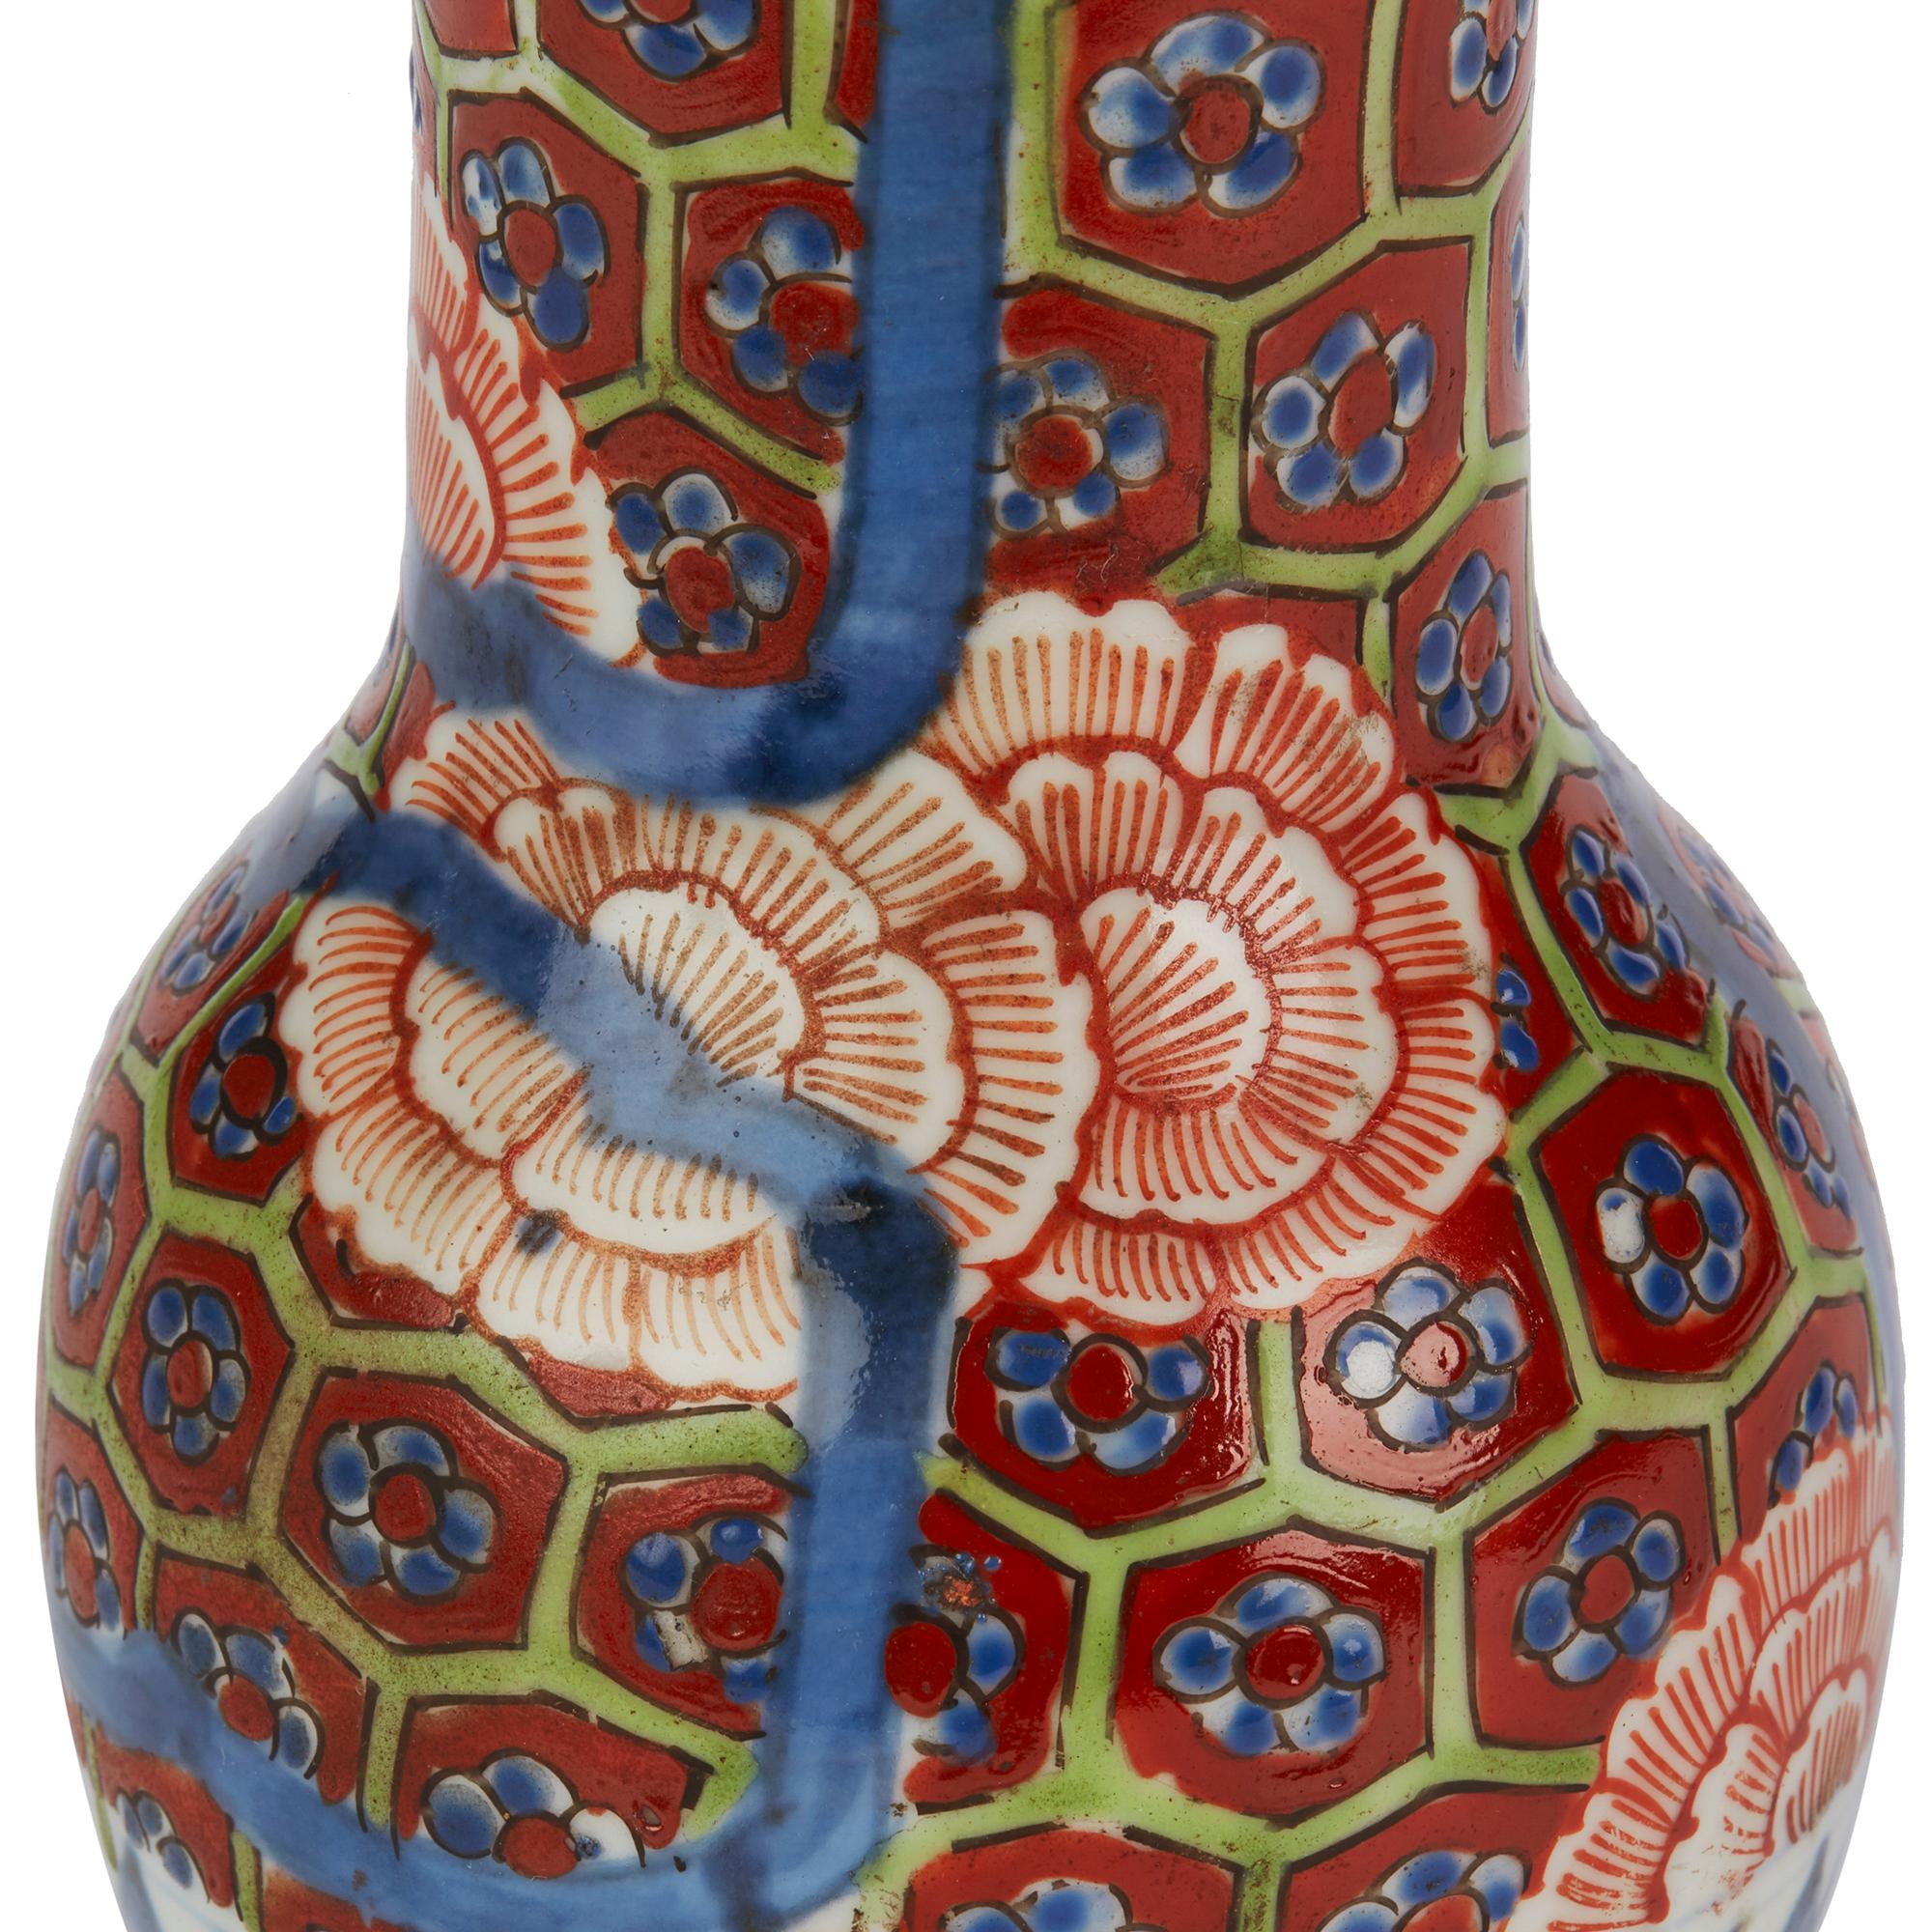 Hand-Painted Japanese Early Meiji Imari Decorated Porcelain Vase, 19th Century